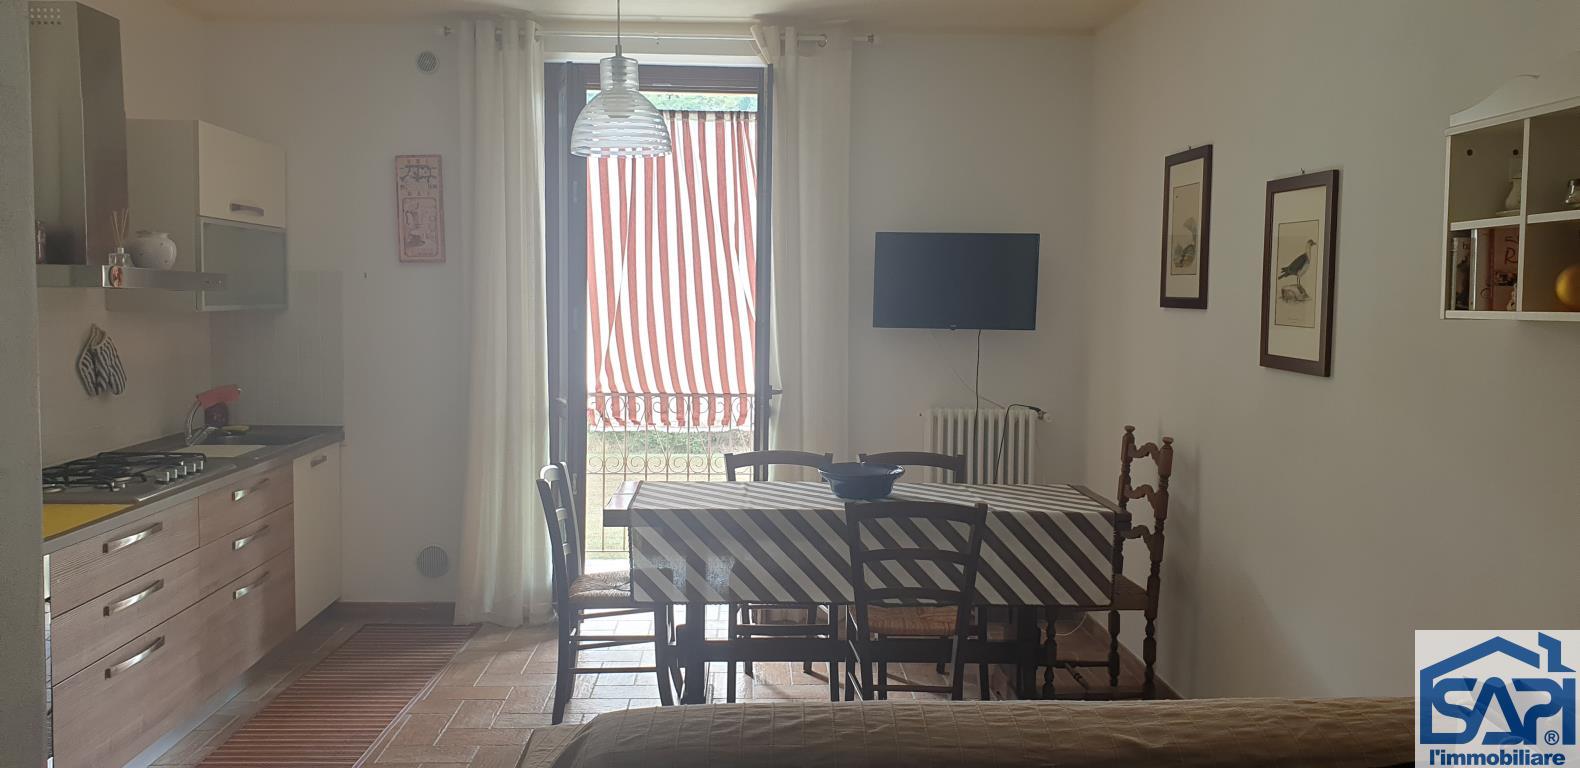 Appartamento in vendita a San Sebastiano Curone, 2 locali, prezzo € 65.000 | PortaleAgenzieImmobiliari.it